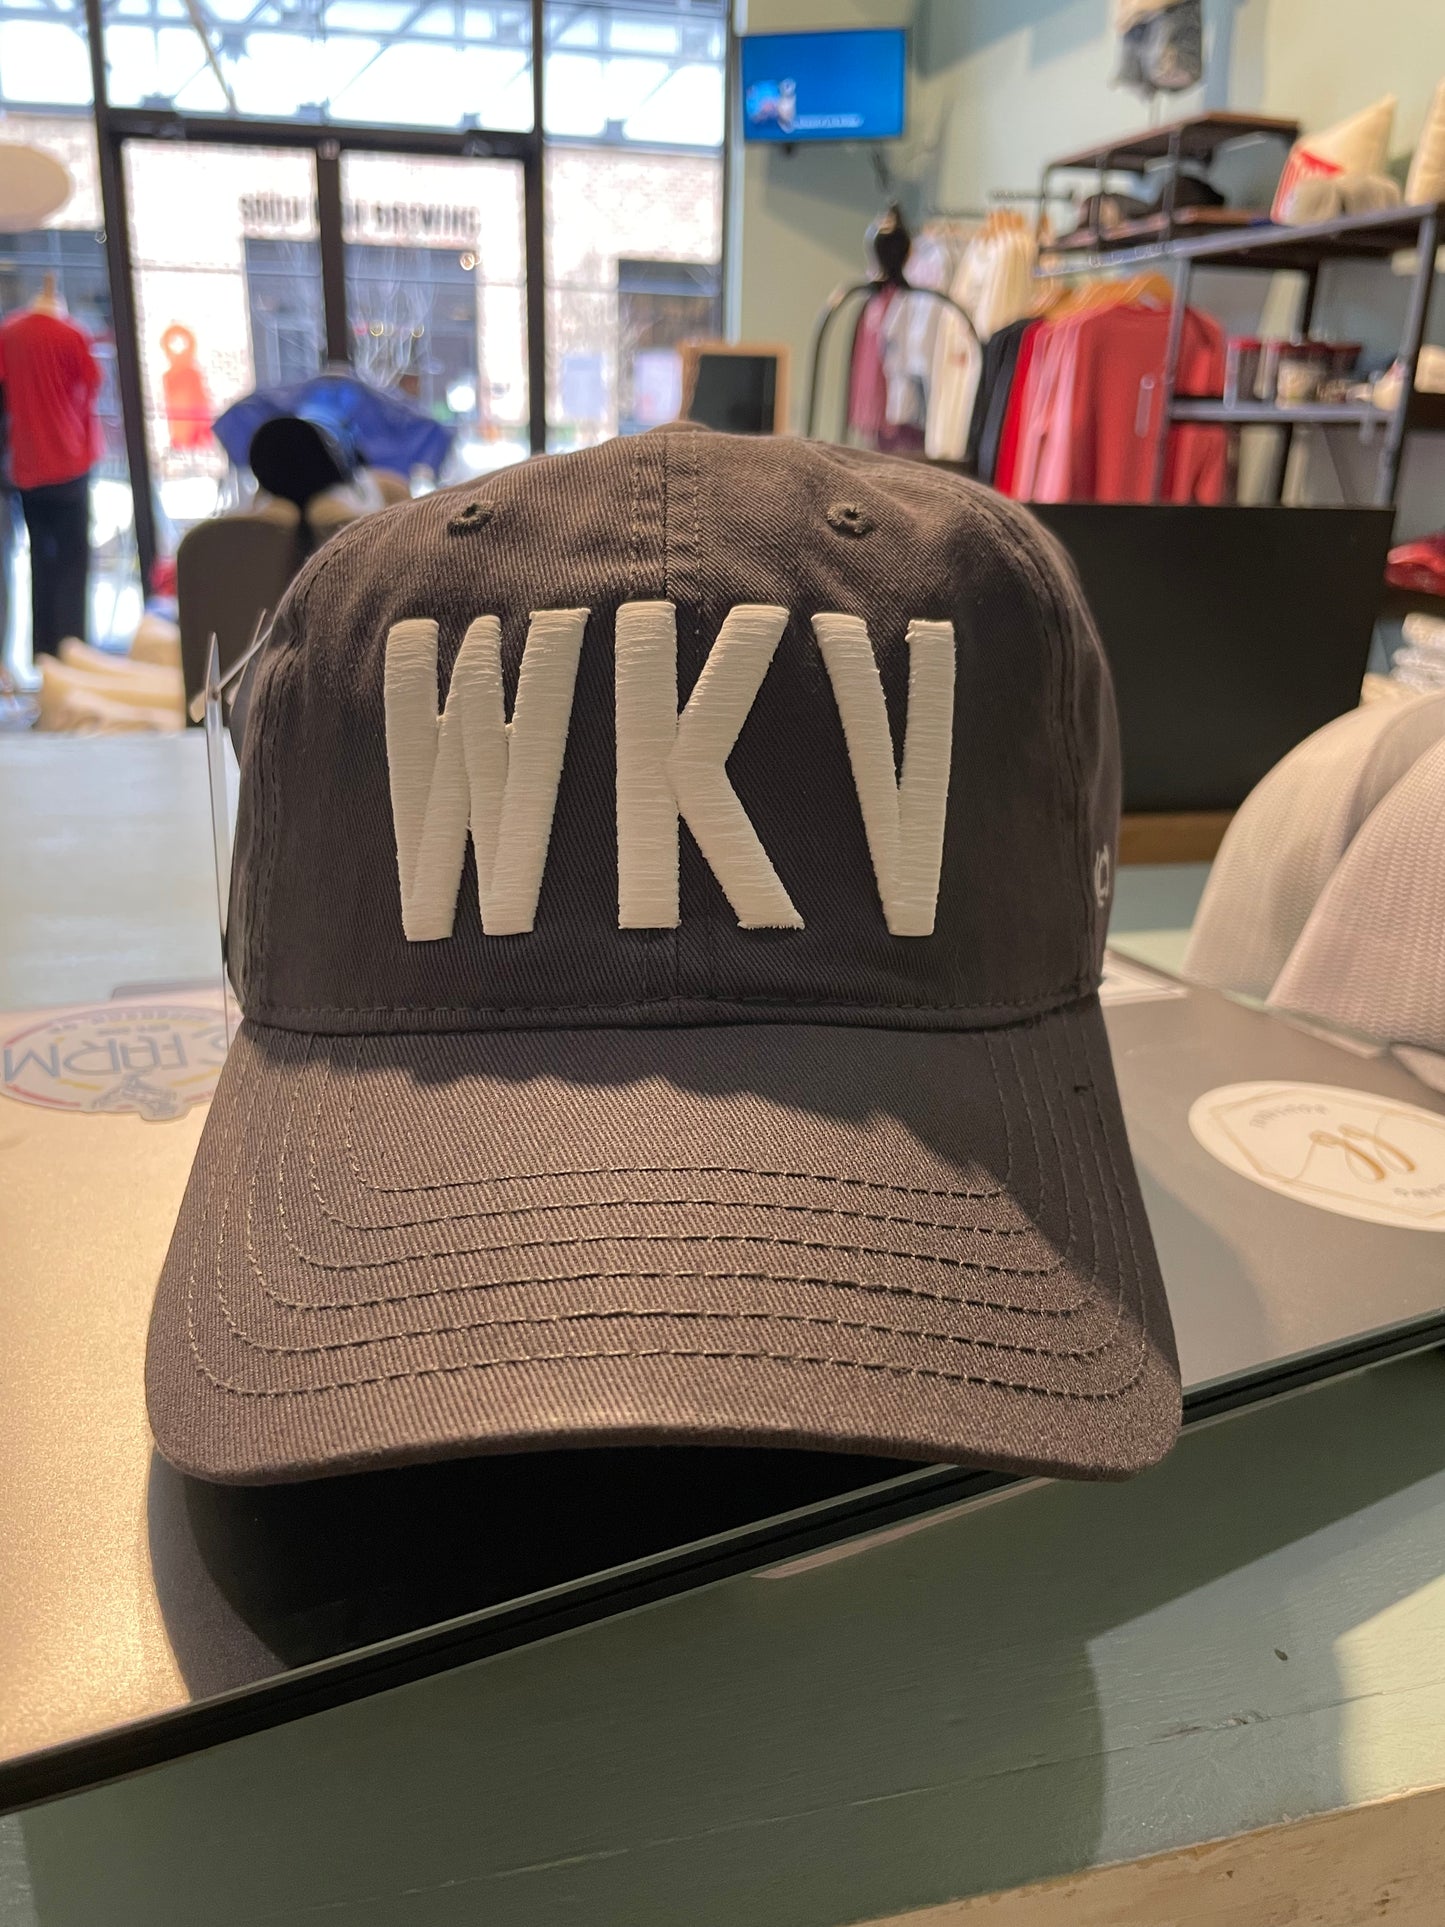 Watkinsville WKV hats